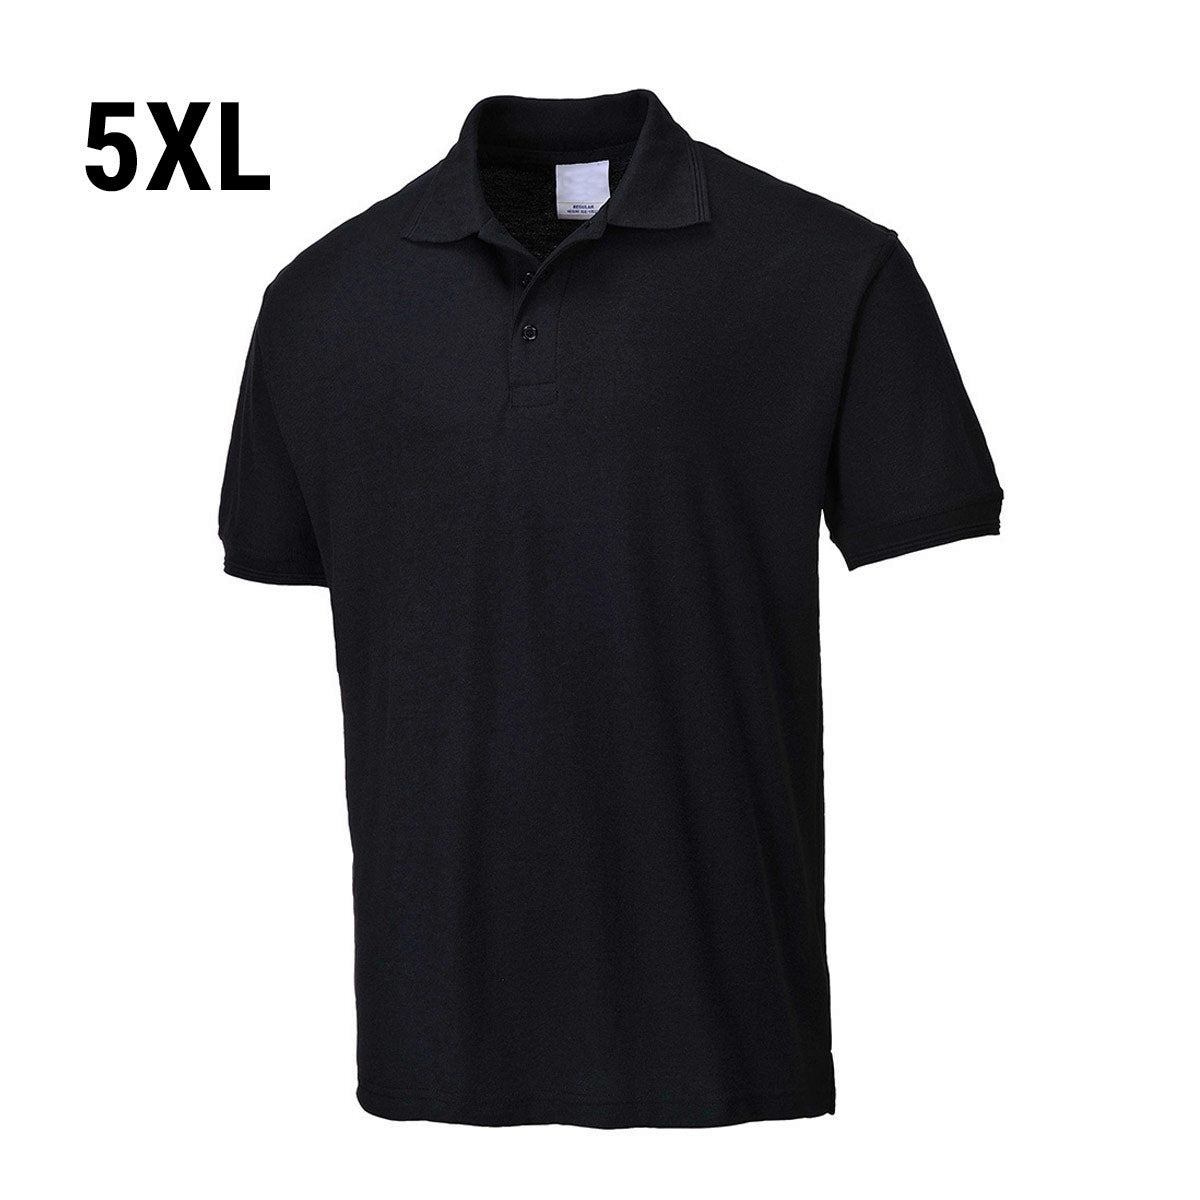 Poloshirt til mænd - Sort - Størrelse: 5XL